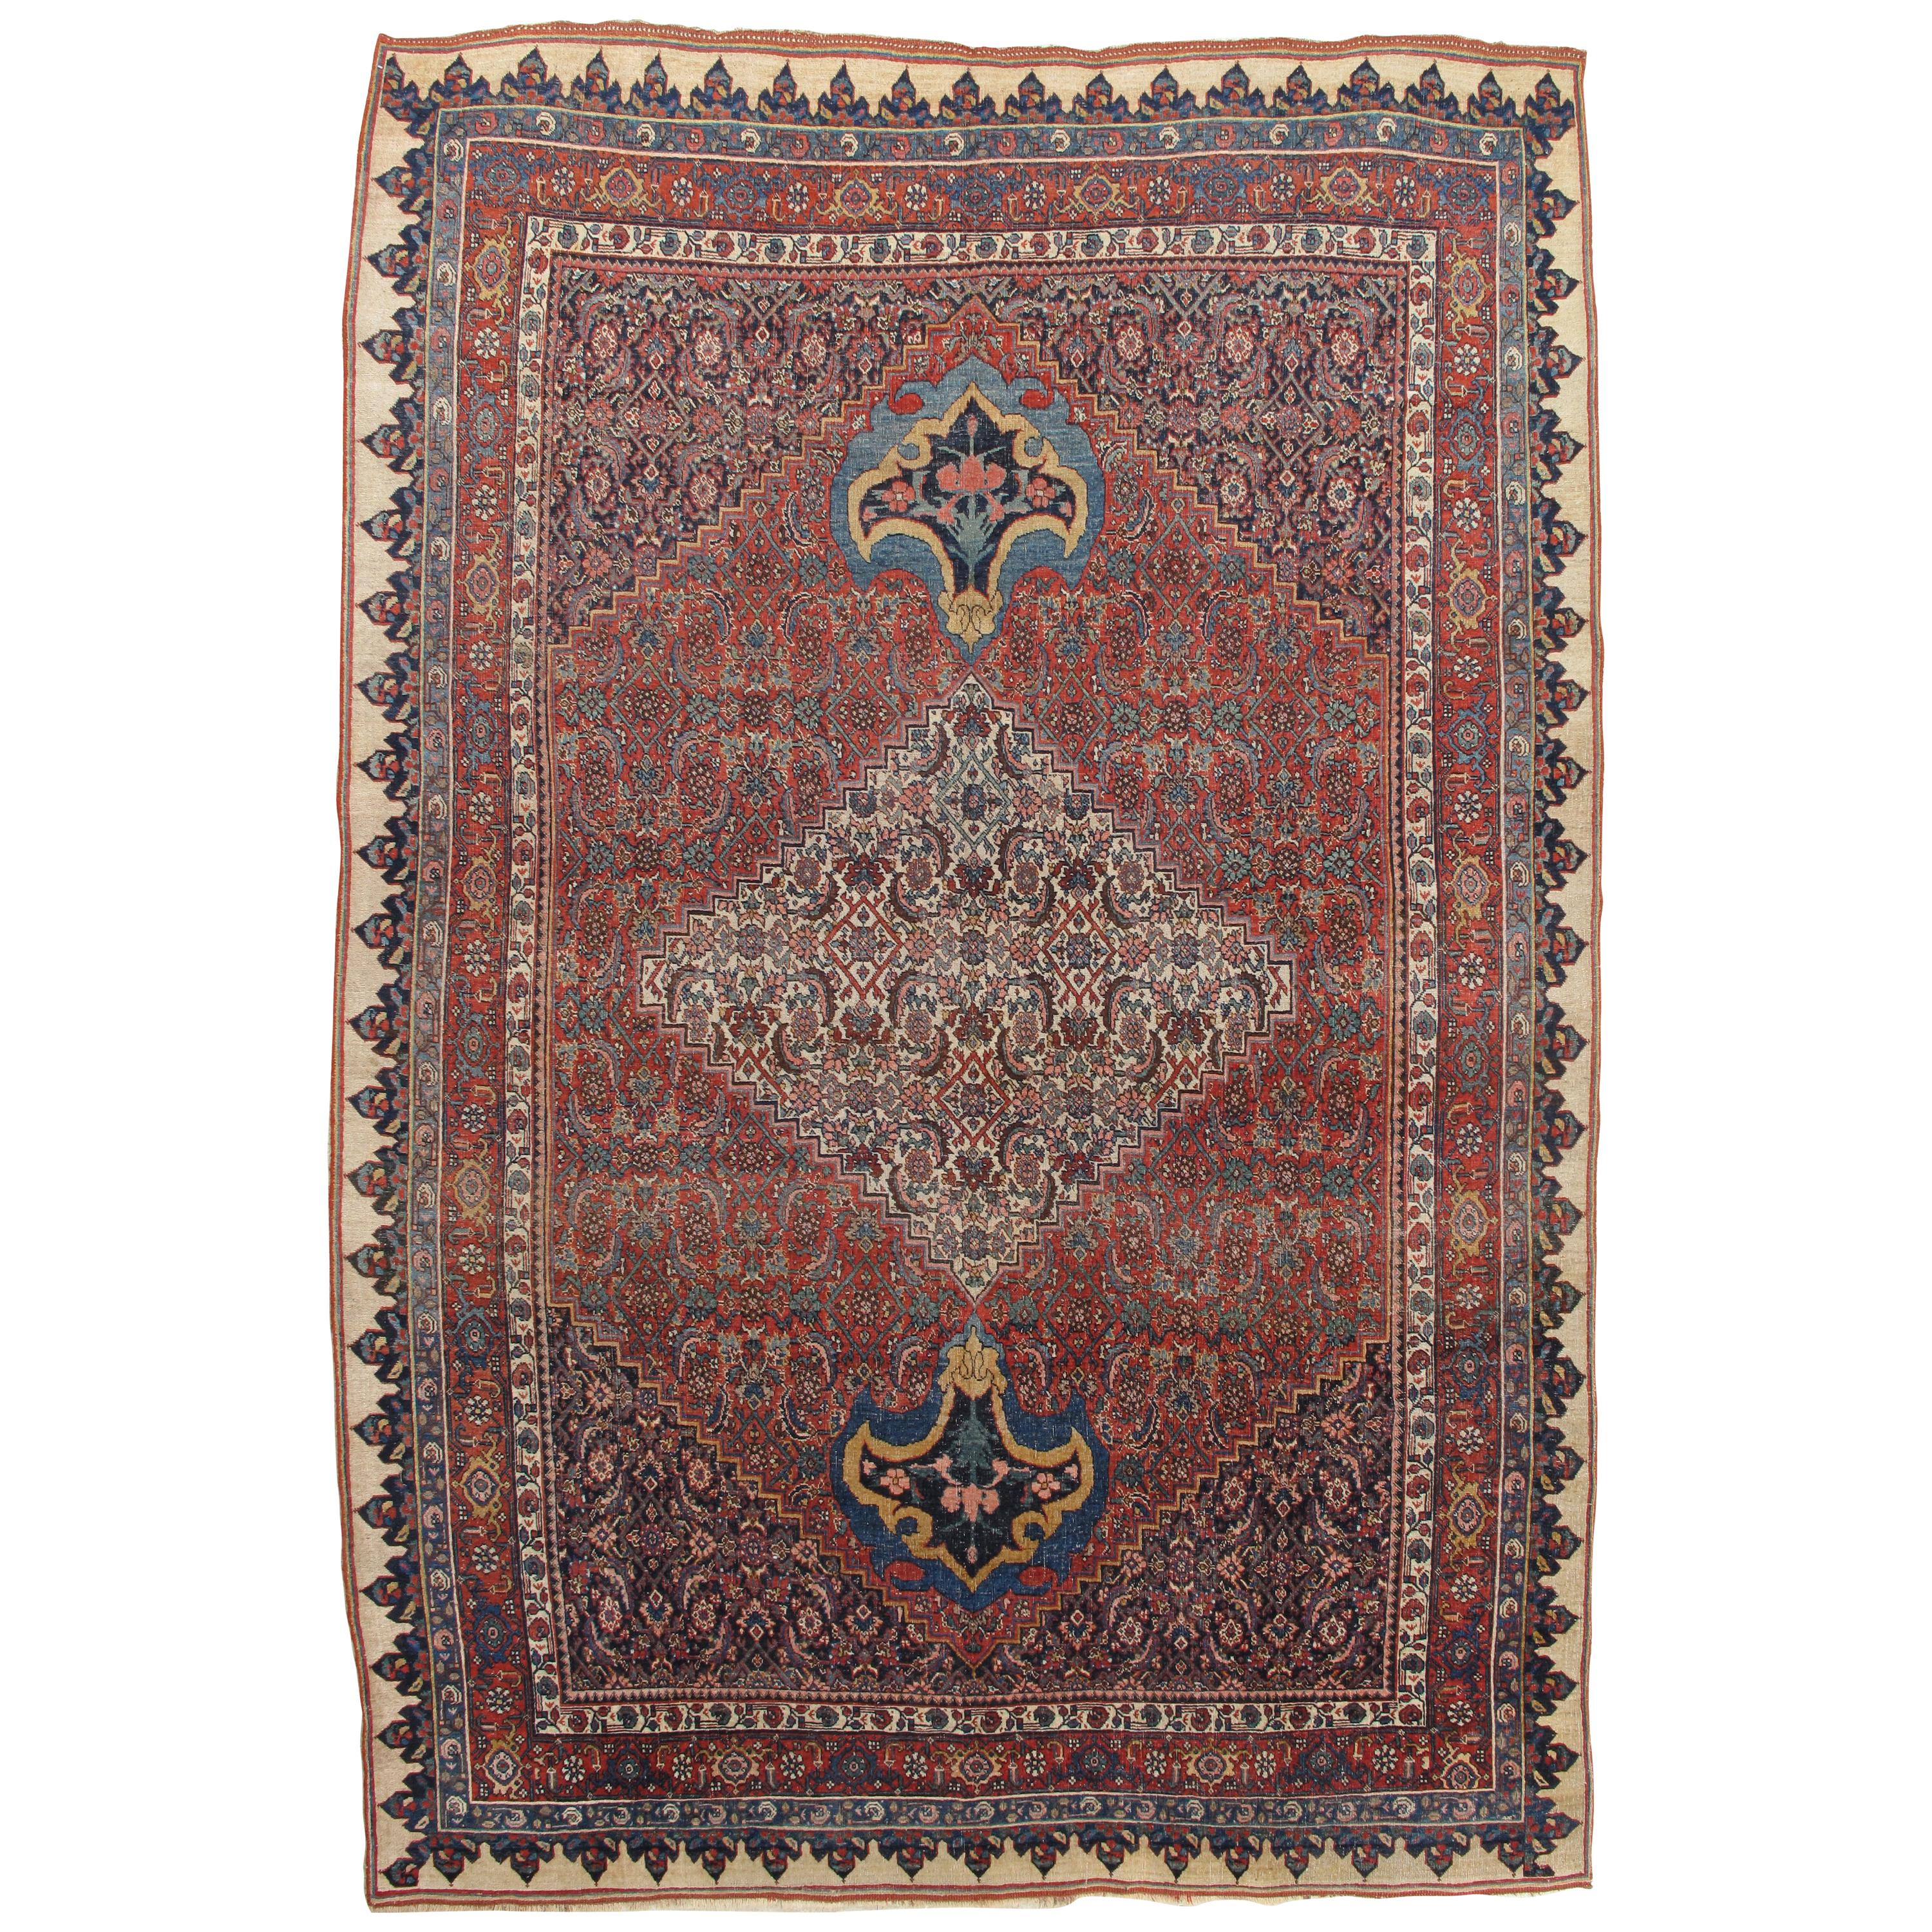 Antiker Bijar-Teppich Orientalischer Teppich, handgefertigt, elfenbeinfarben, rostfarben, hellblau, Terrakotta